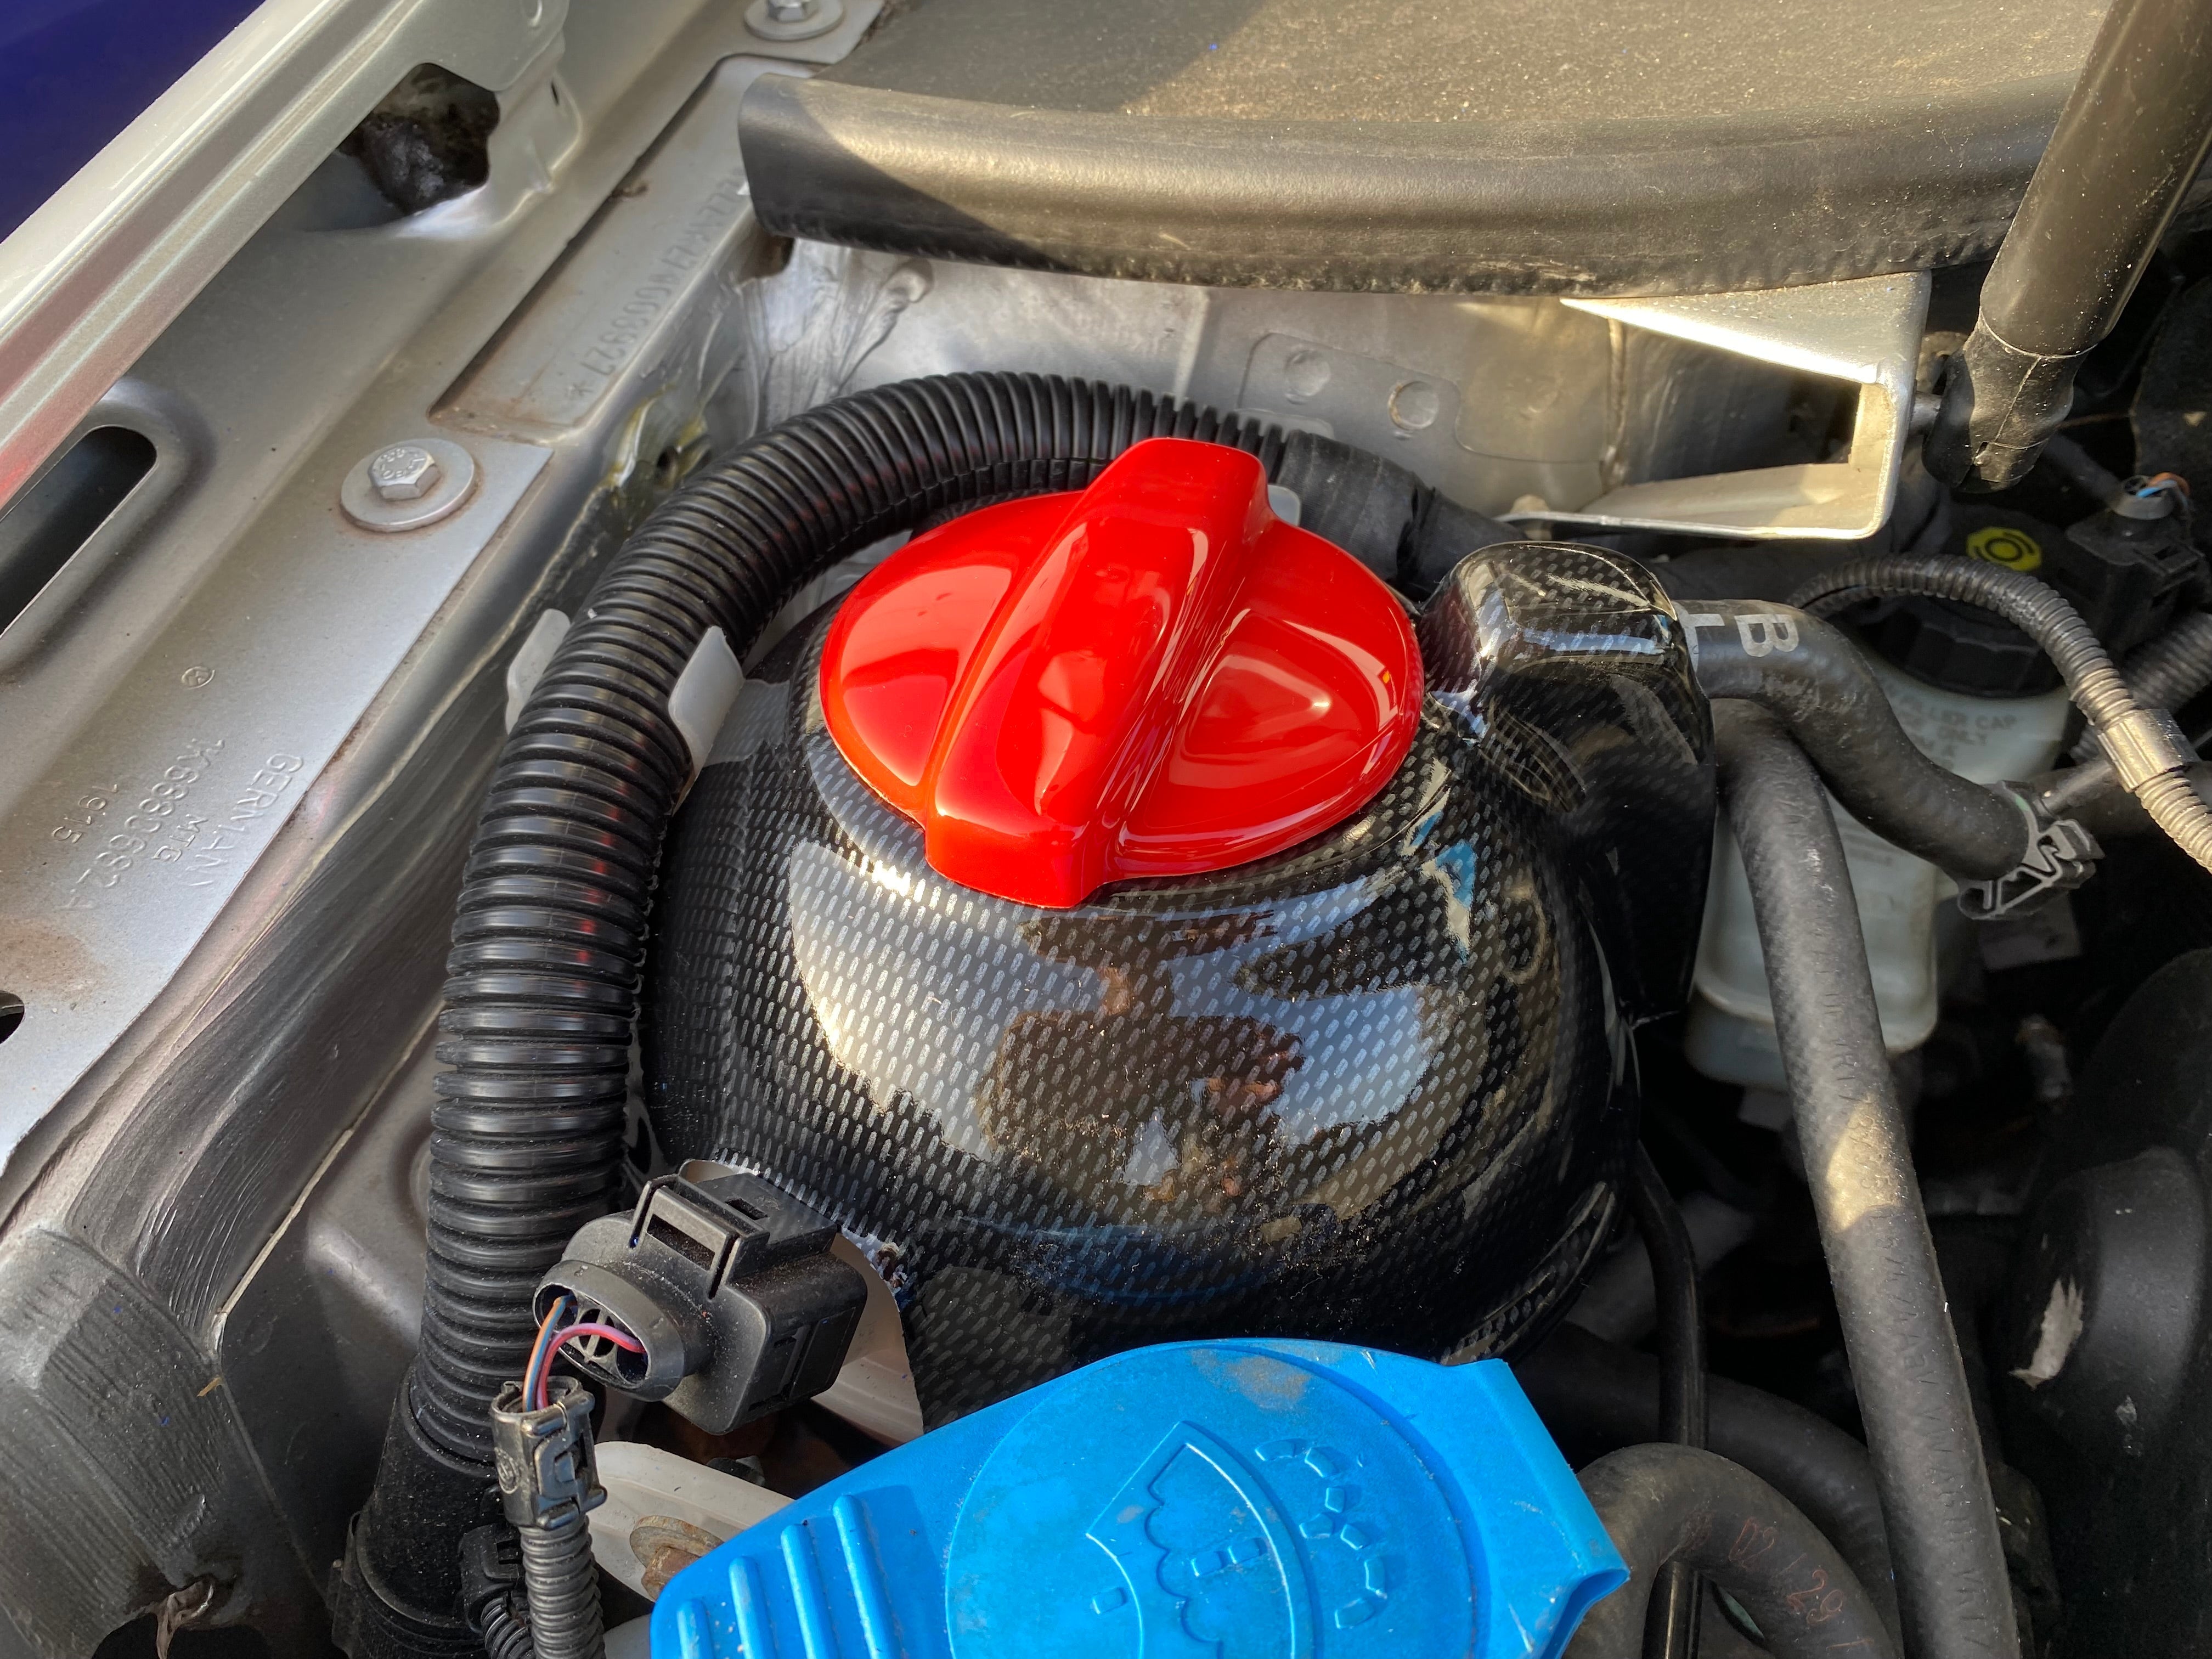 Proform Coolant Cap Cover - Audi TT (Plastic Finishes)